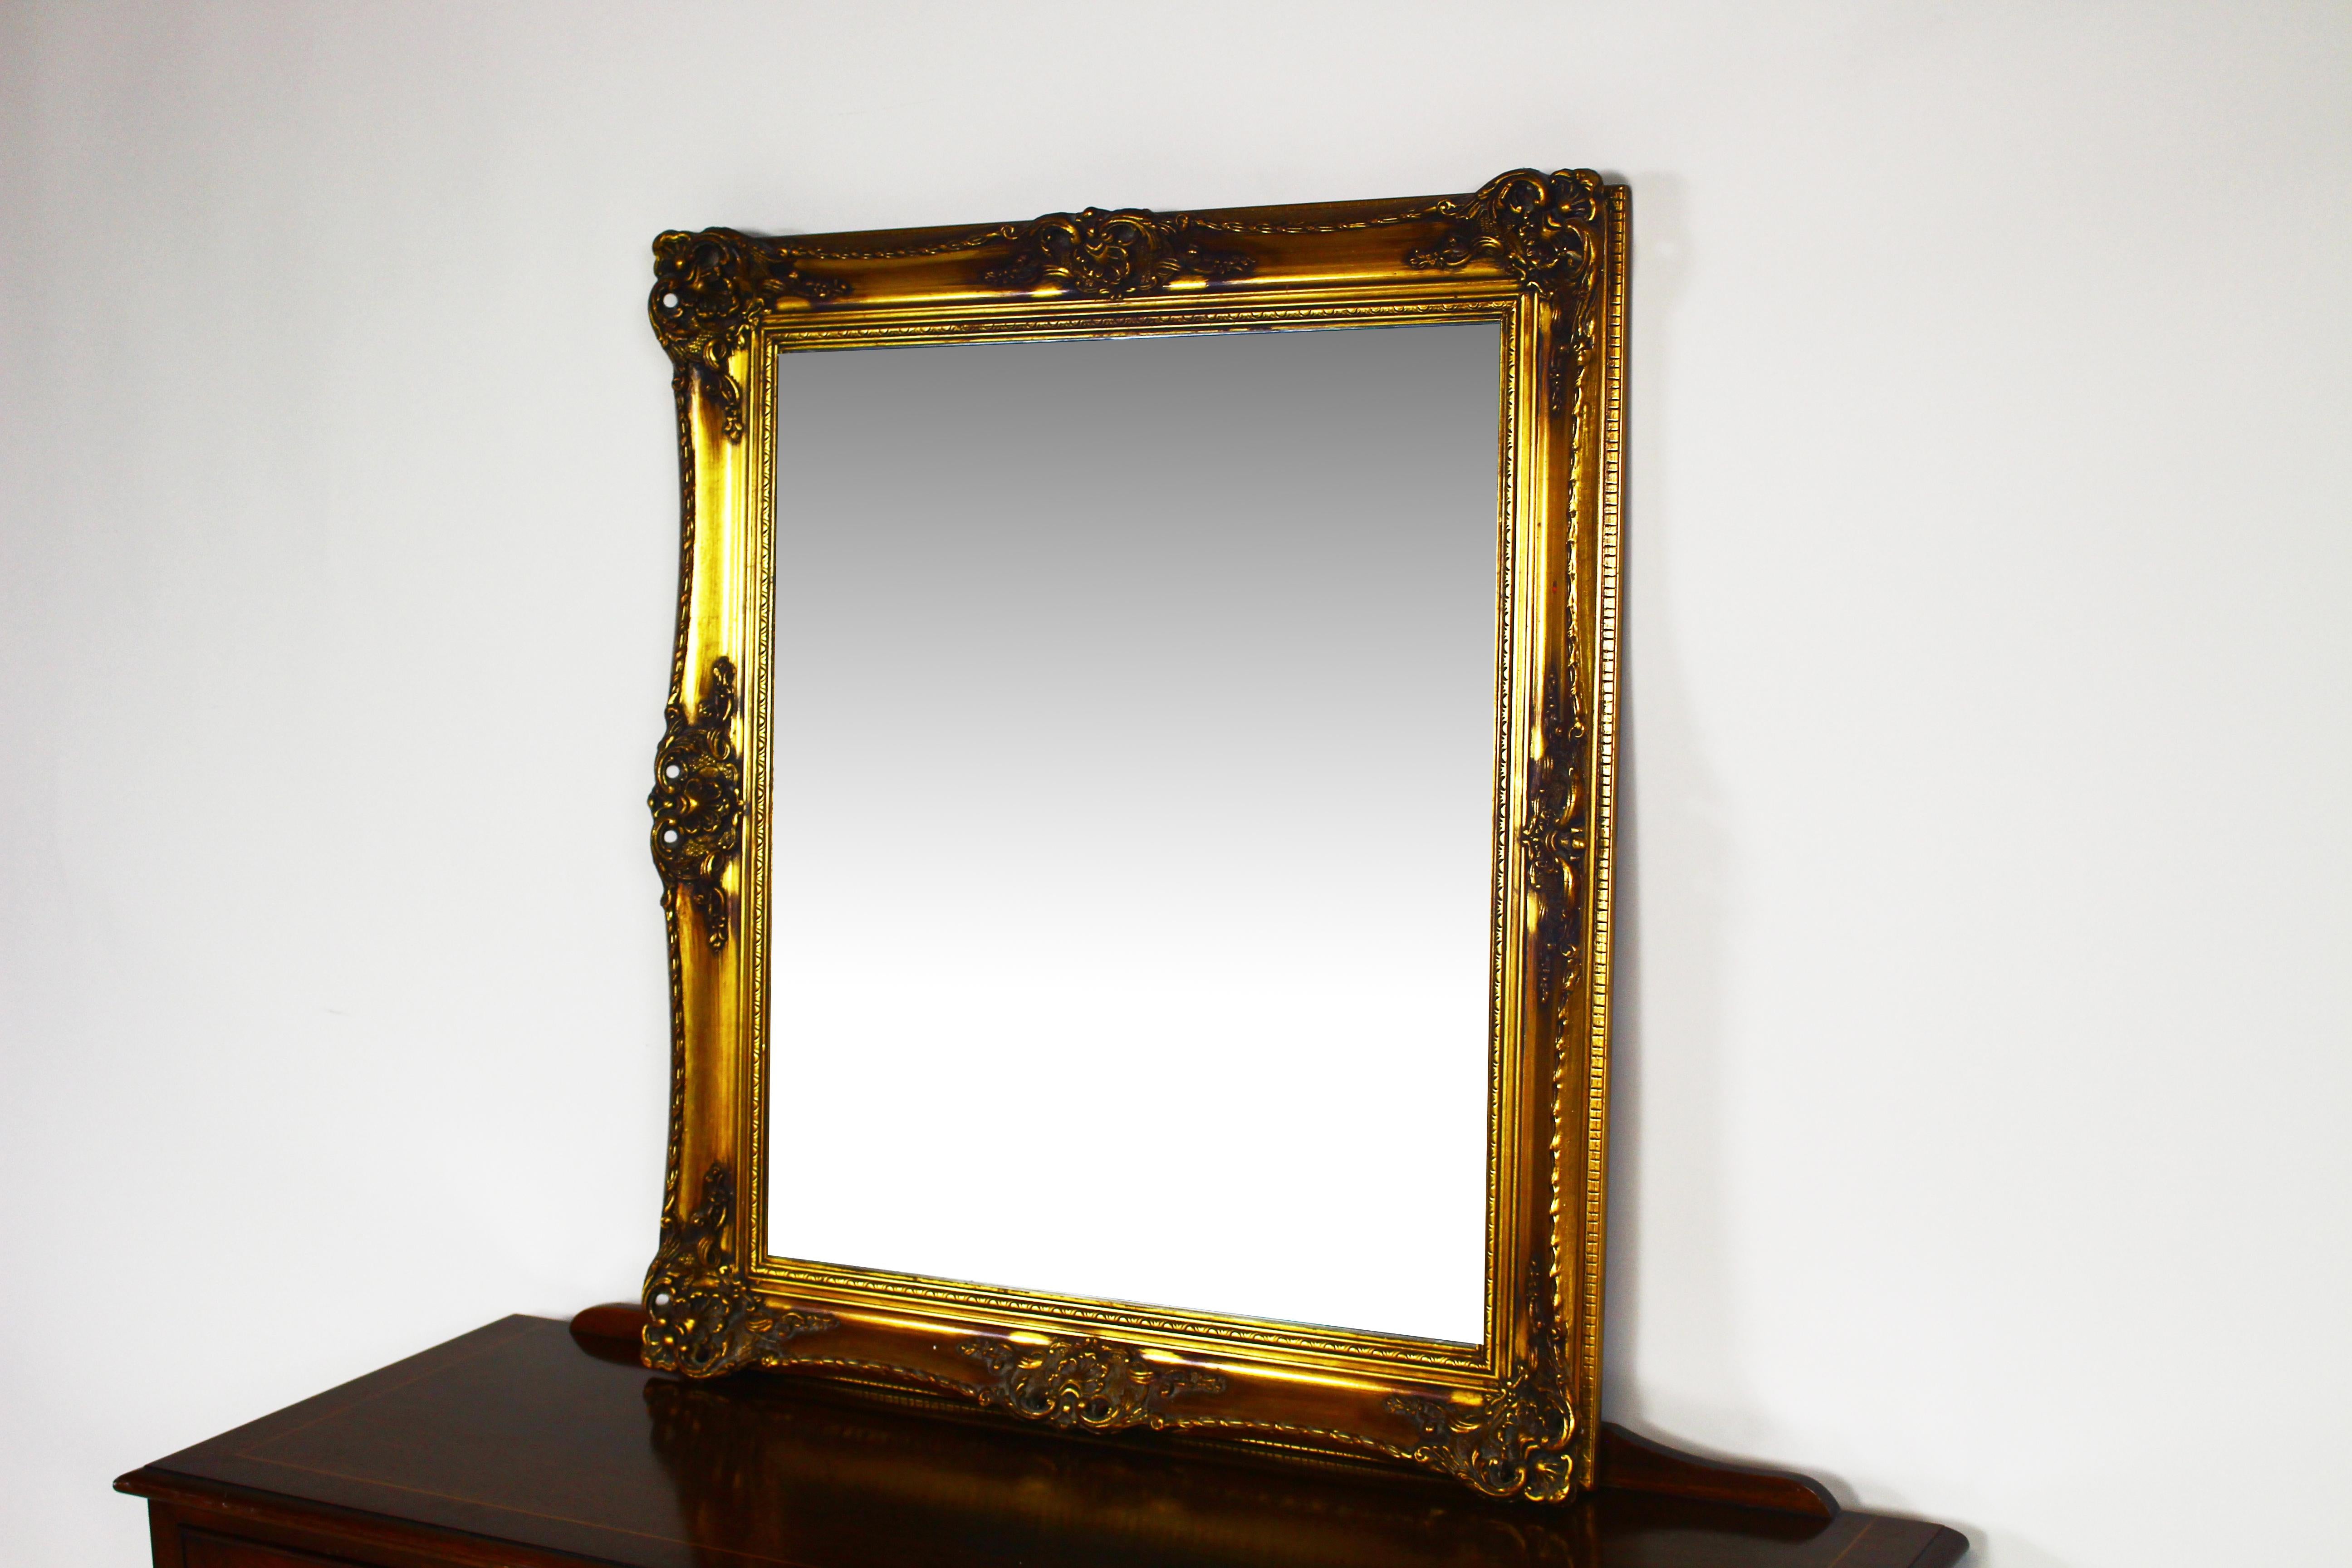 Wunderschöner antiker Spiegel mit vergoldetem Rahmen.
Spiegel mit geschnitztem Rahmen.
Guter Zustand, einsatzbereit.